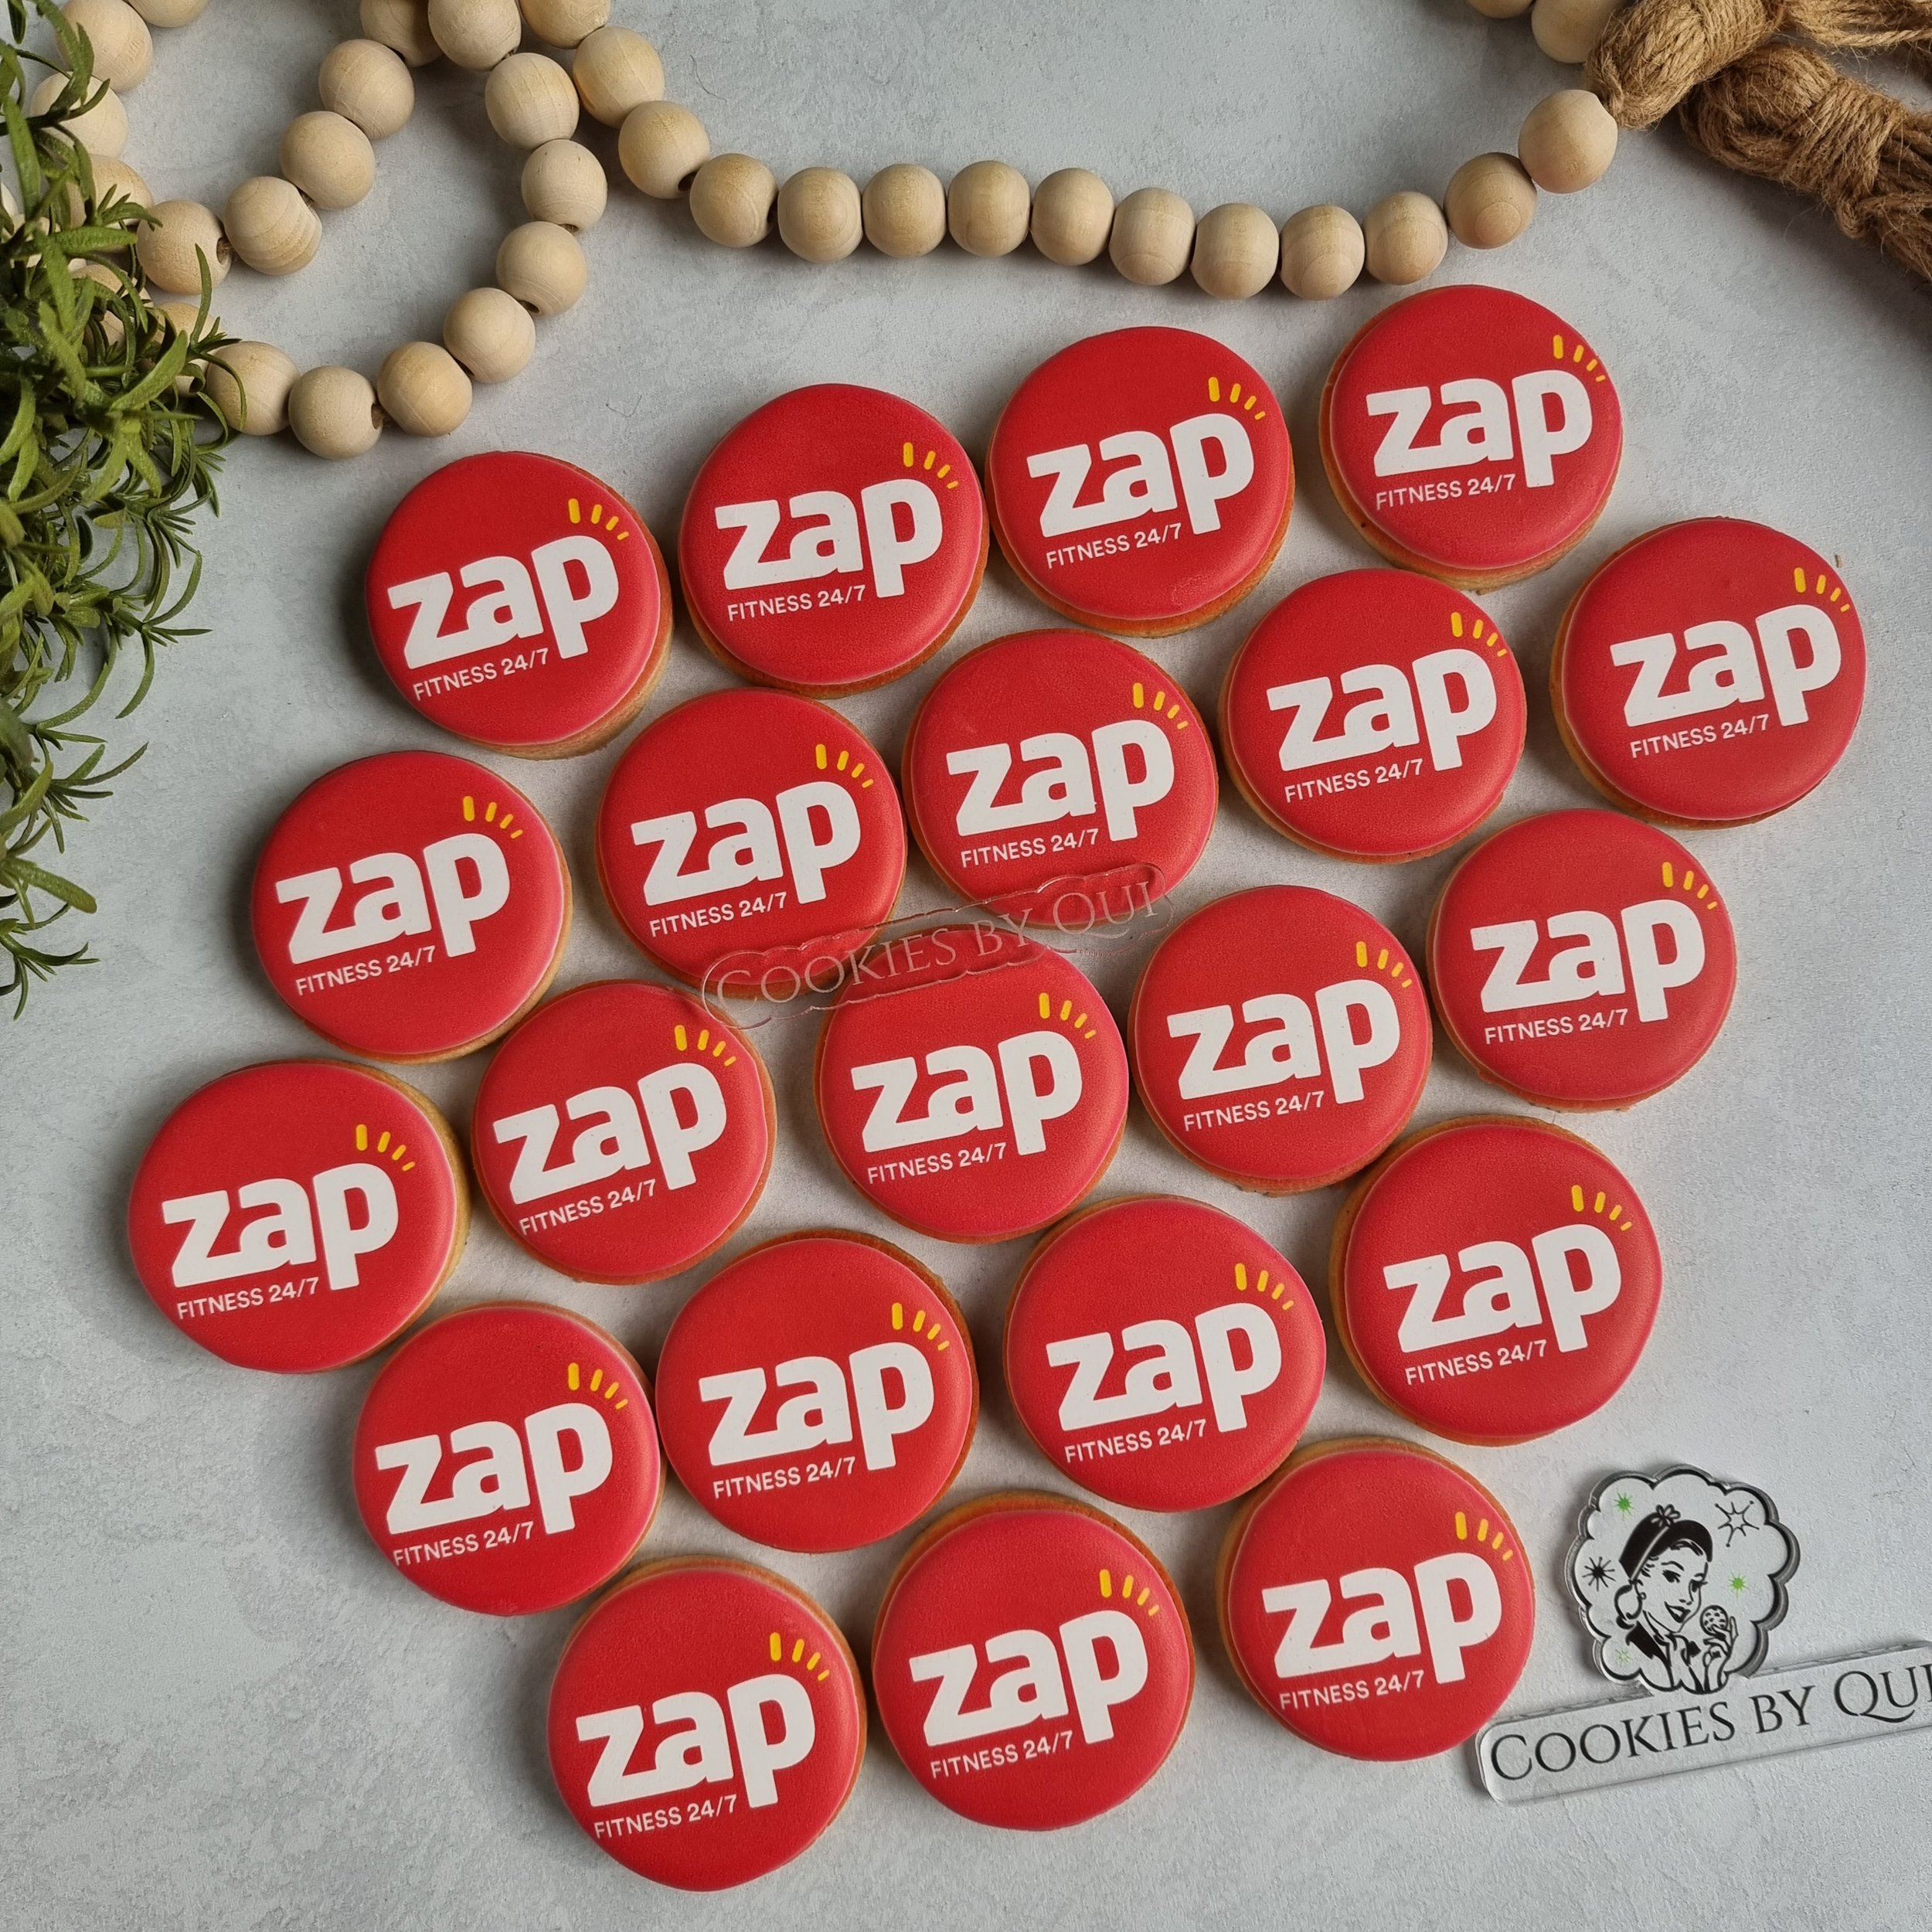 Zap Fitness Gym - Corporate Cookies - Cookies by Qui Geelong.jpg